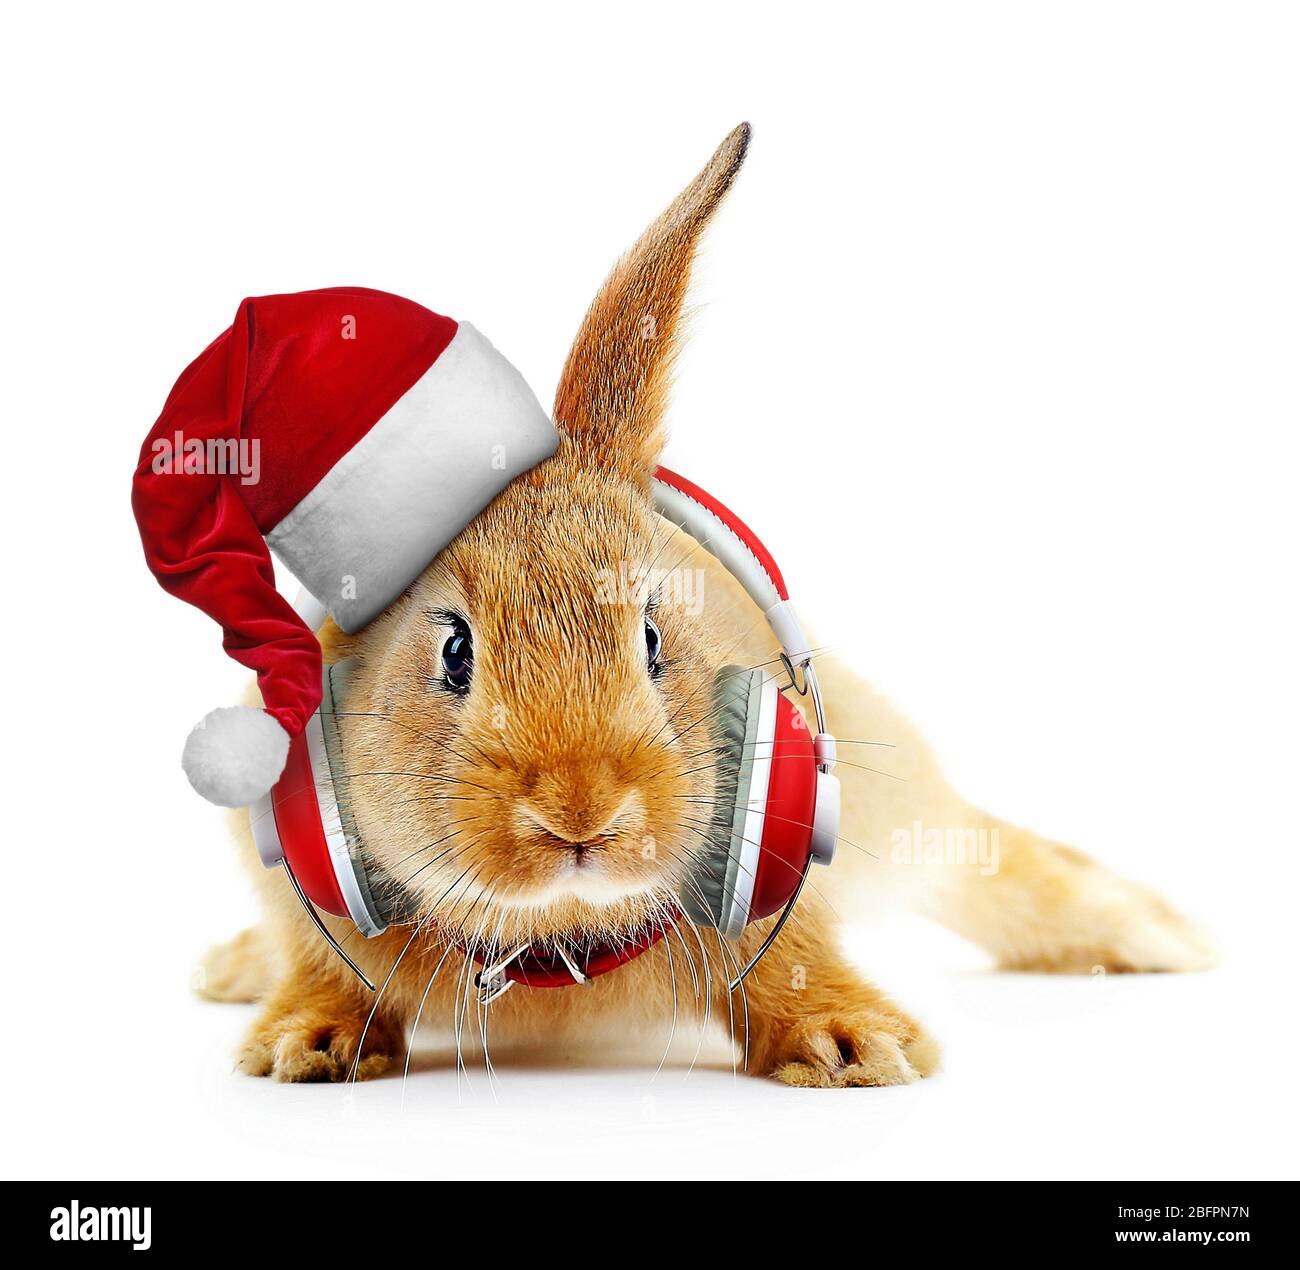 Thỏ đáng yêu đội mũ ông già Noel sẽ khiến bạn bật ngửa với sự đáng yêu và dễ thương của nó. Hãy xem hình ảnh để tận hưởng vẻ đẹp đáng yêu của thỏ và cảm nhận sự ấm áp của mùa lễ hội.